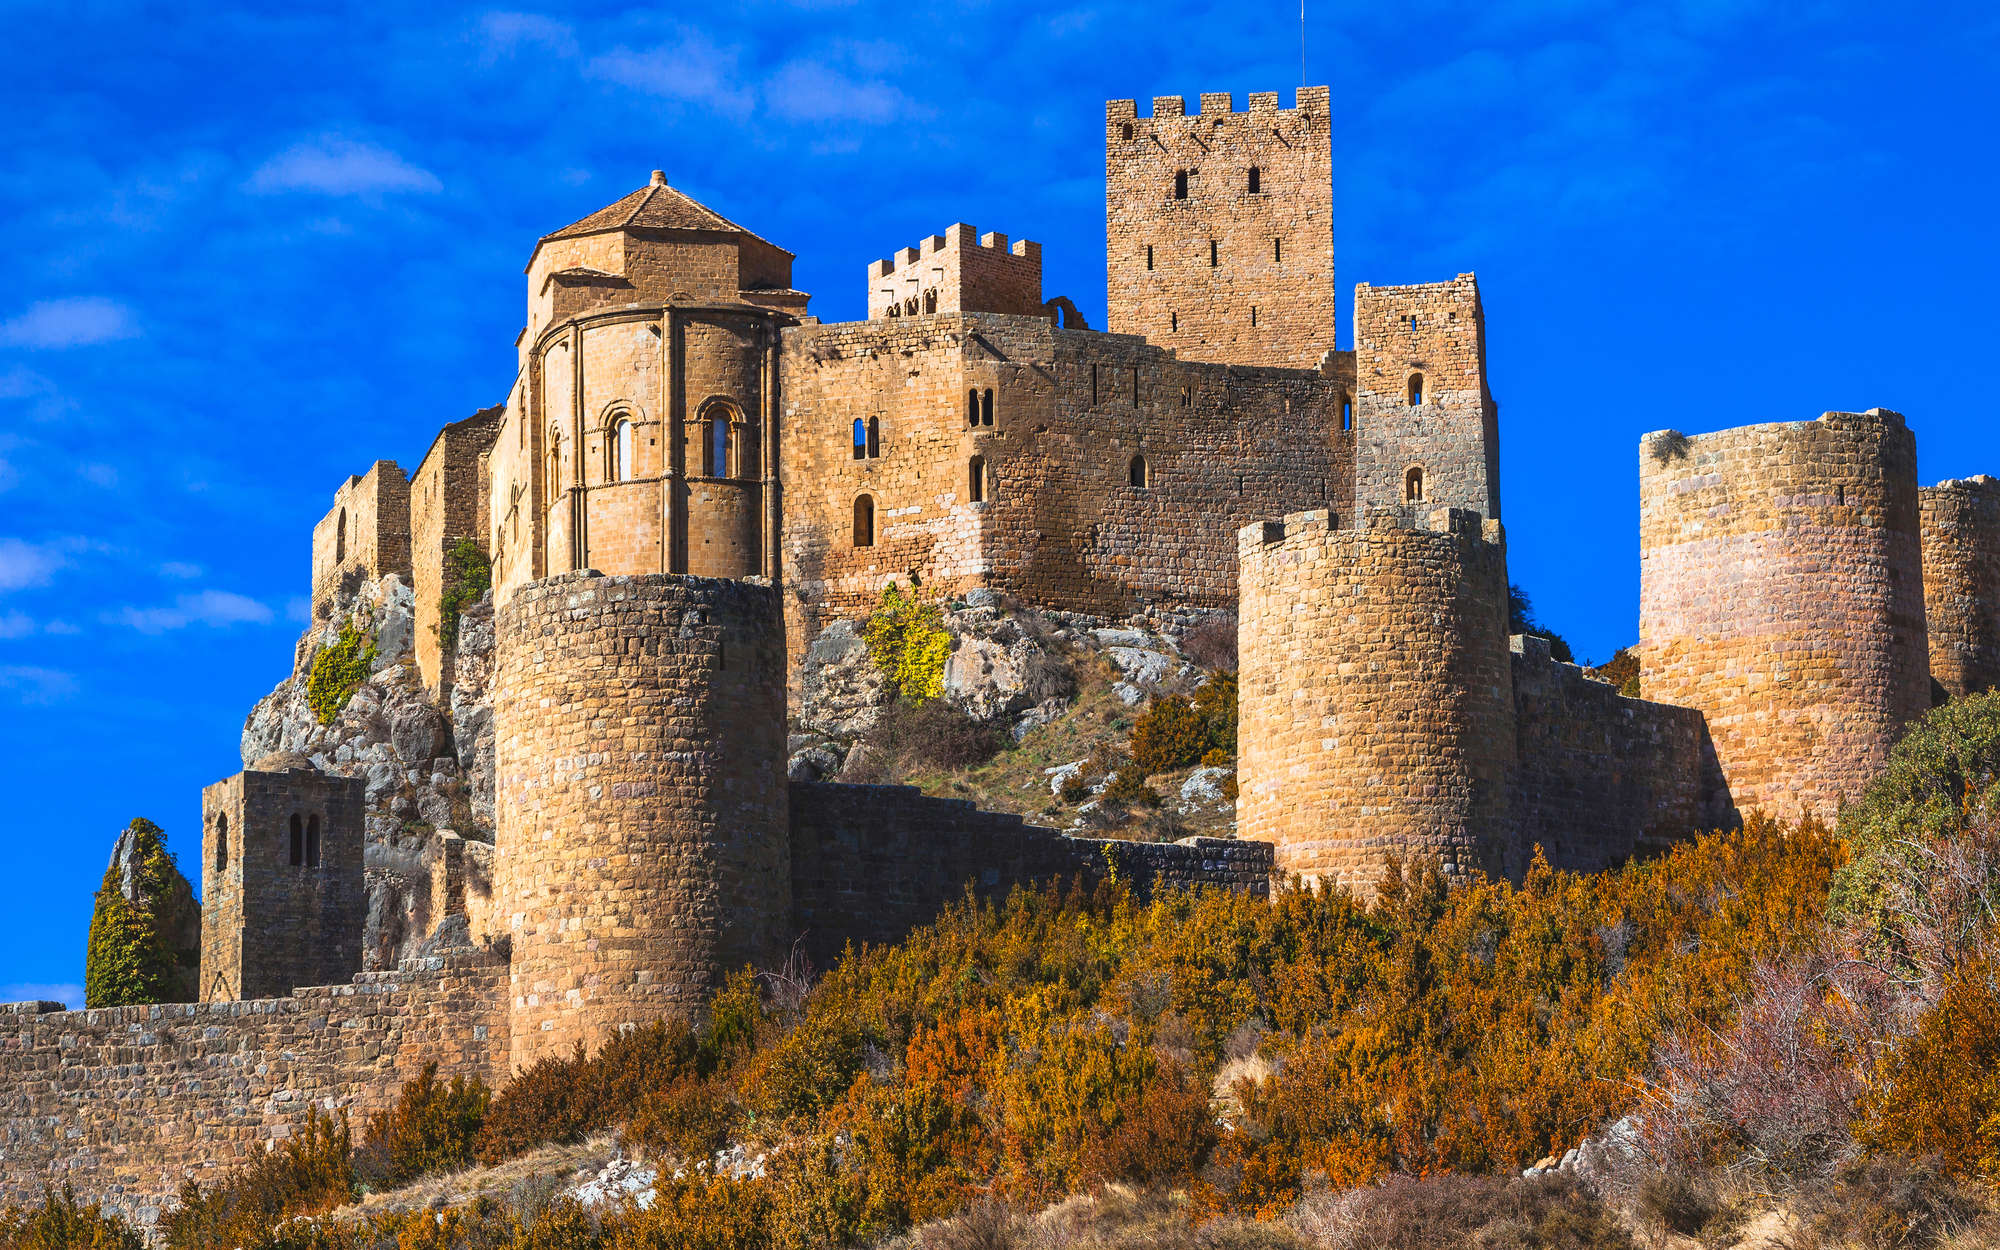             Fototapete Antike Burg mit Steinmauer – Strukturiertes Vlies
        